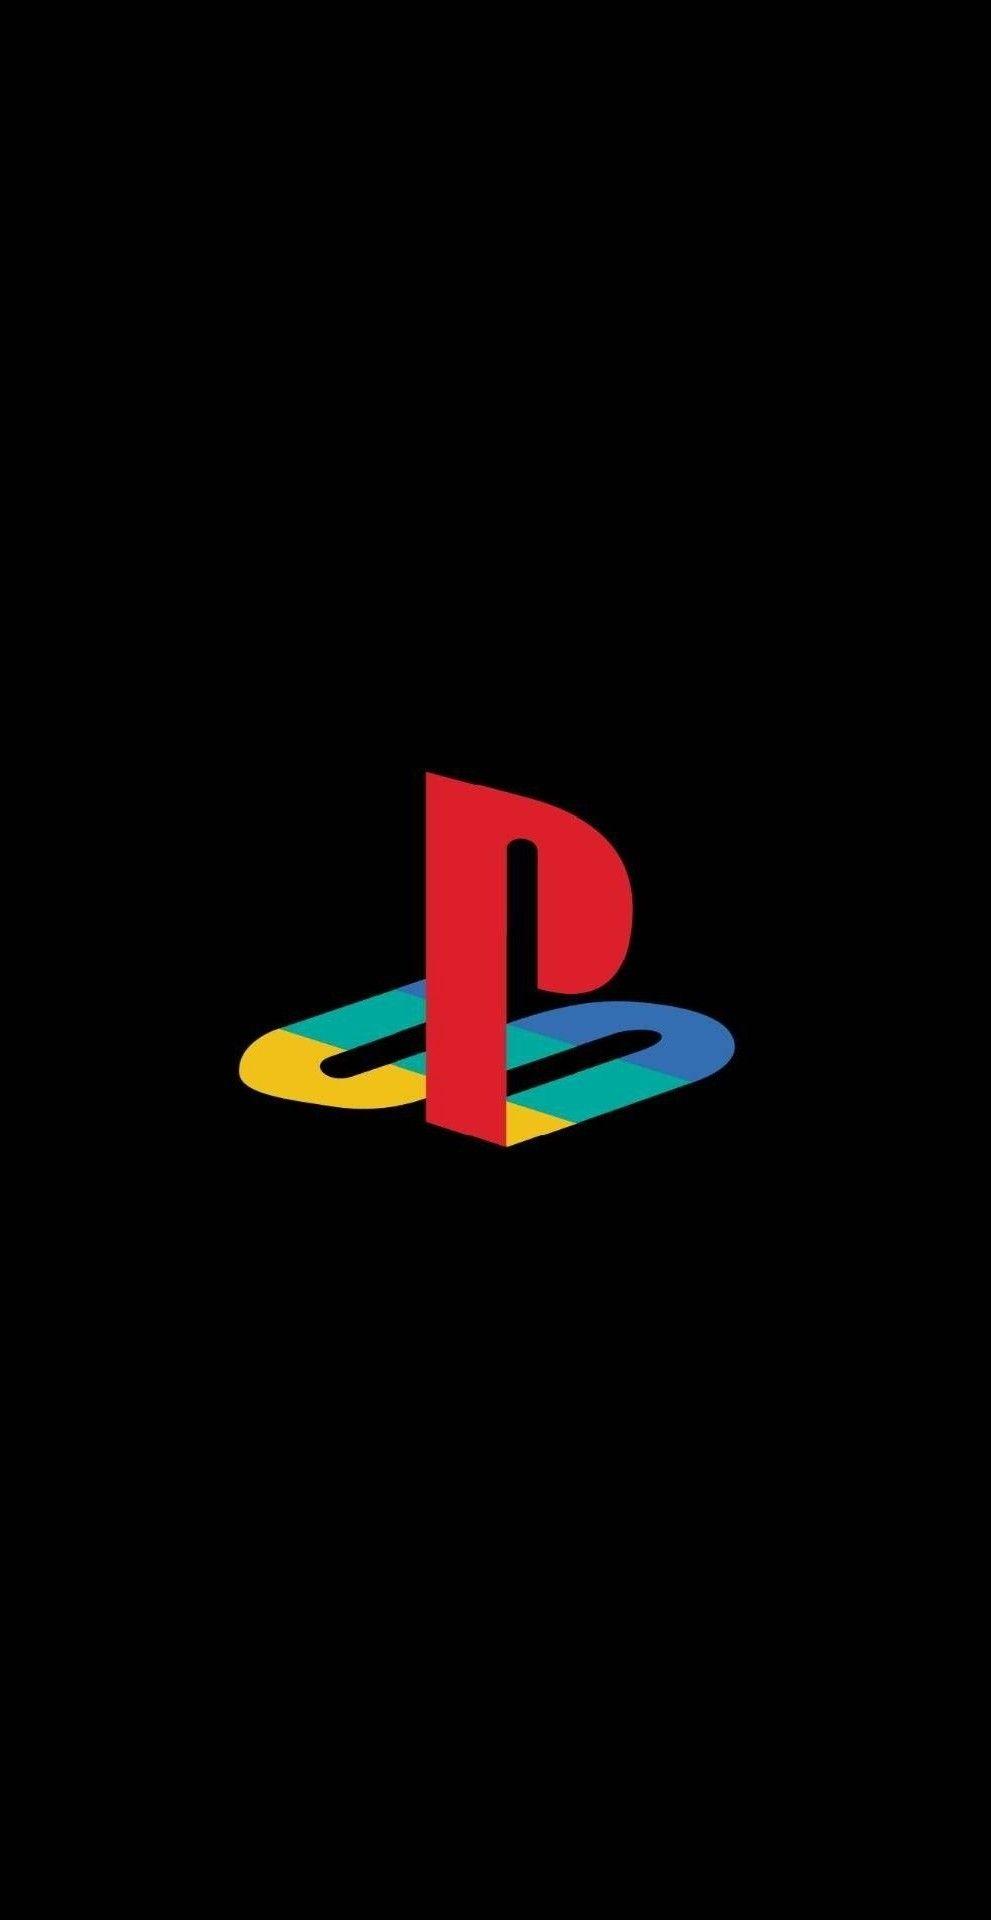 Tek. Playstation logo, Hypebeast